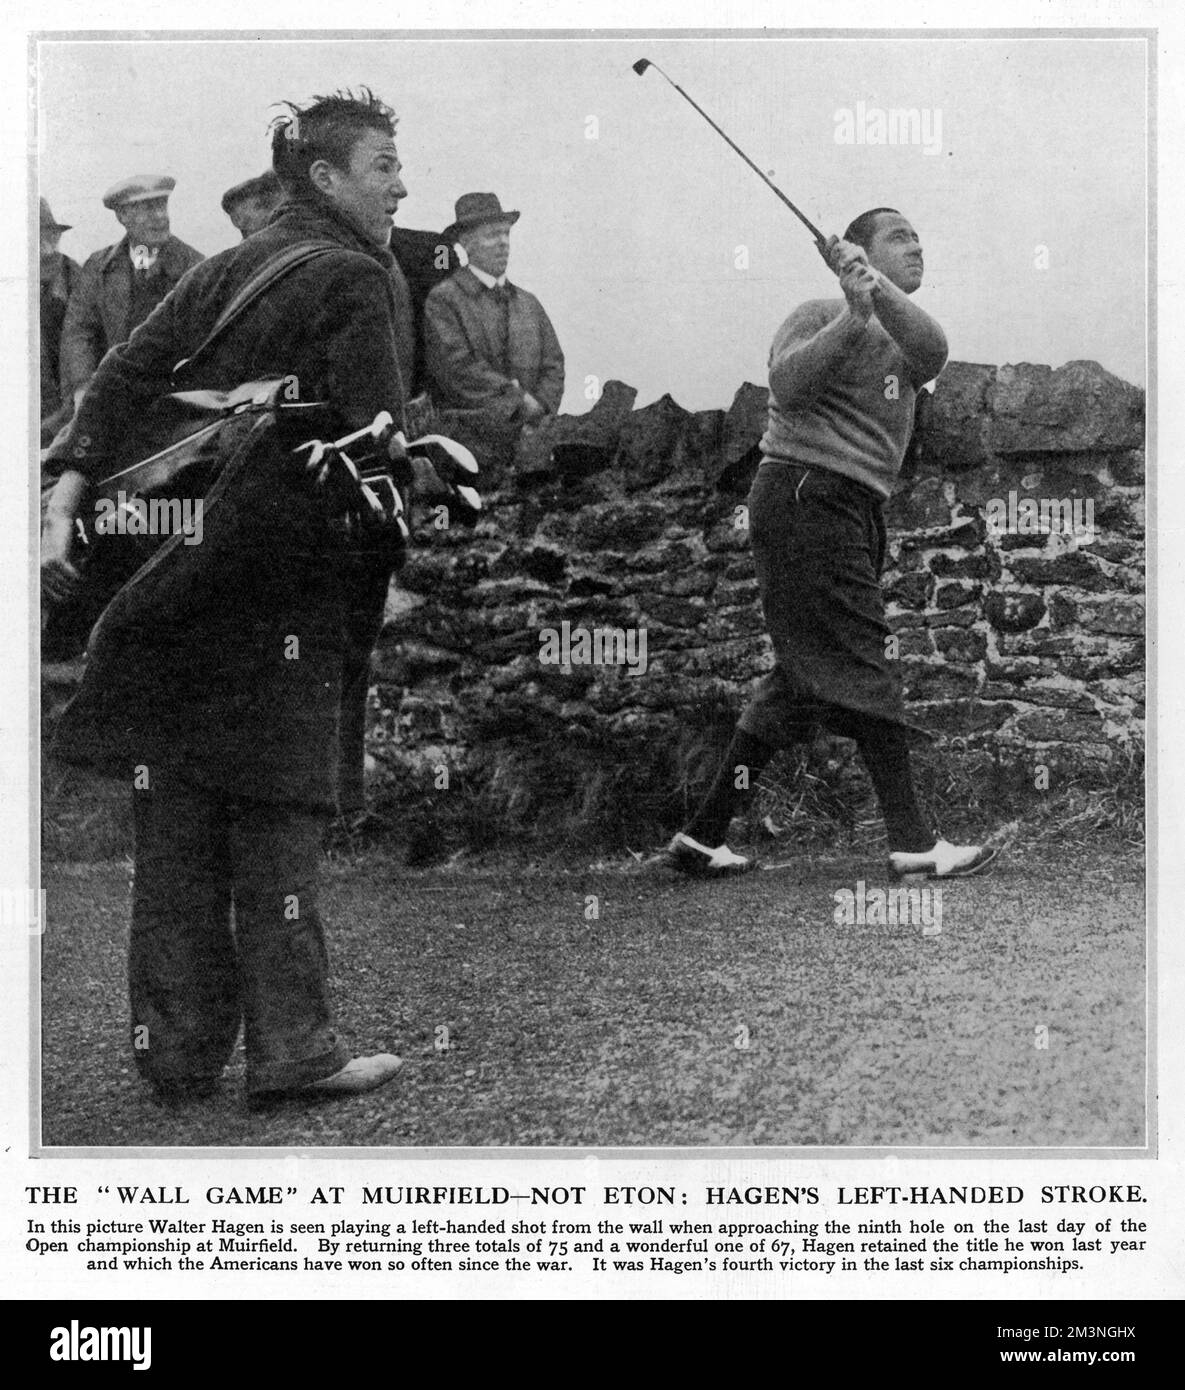 Il golfista americano Walter Hagen gioca un colpo con la mano sinistra da una posizione difficile sul nono foro a Muirfield, Scozia, la sua sfera troppo vicino ad un muro di pietra per colpire nel suo modo usuale con la mano destra. Hagen stava giocando l'ultimo giorno del Campionato Open, sulla sua strada per la quarta e ultima delle sue vittorie Open. Data: Maggio 1929 Foto Stock